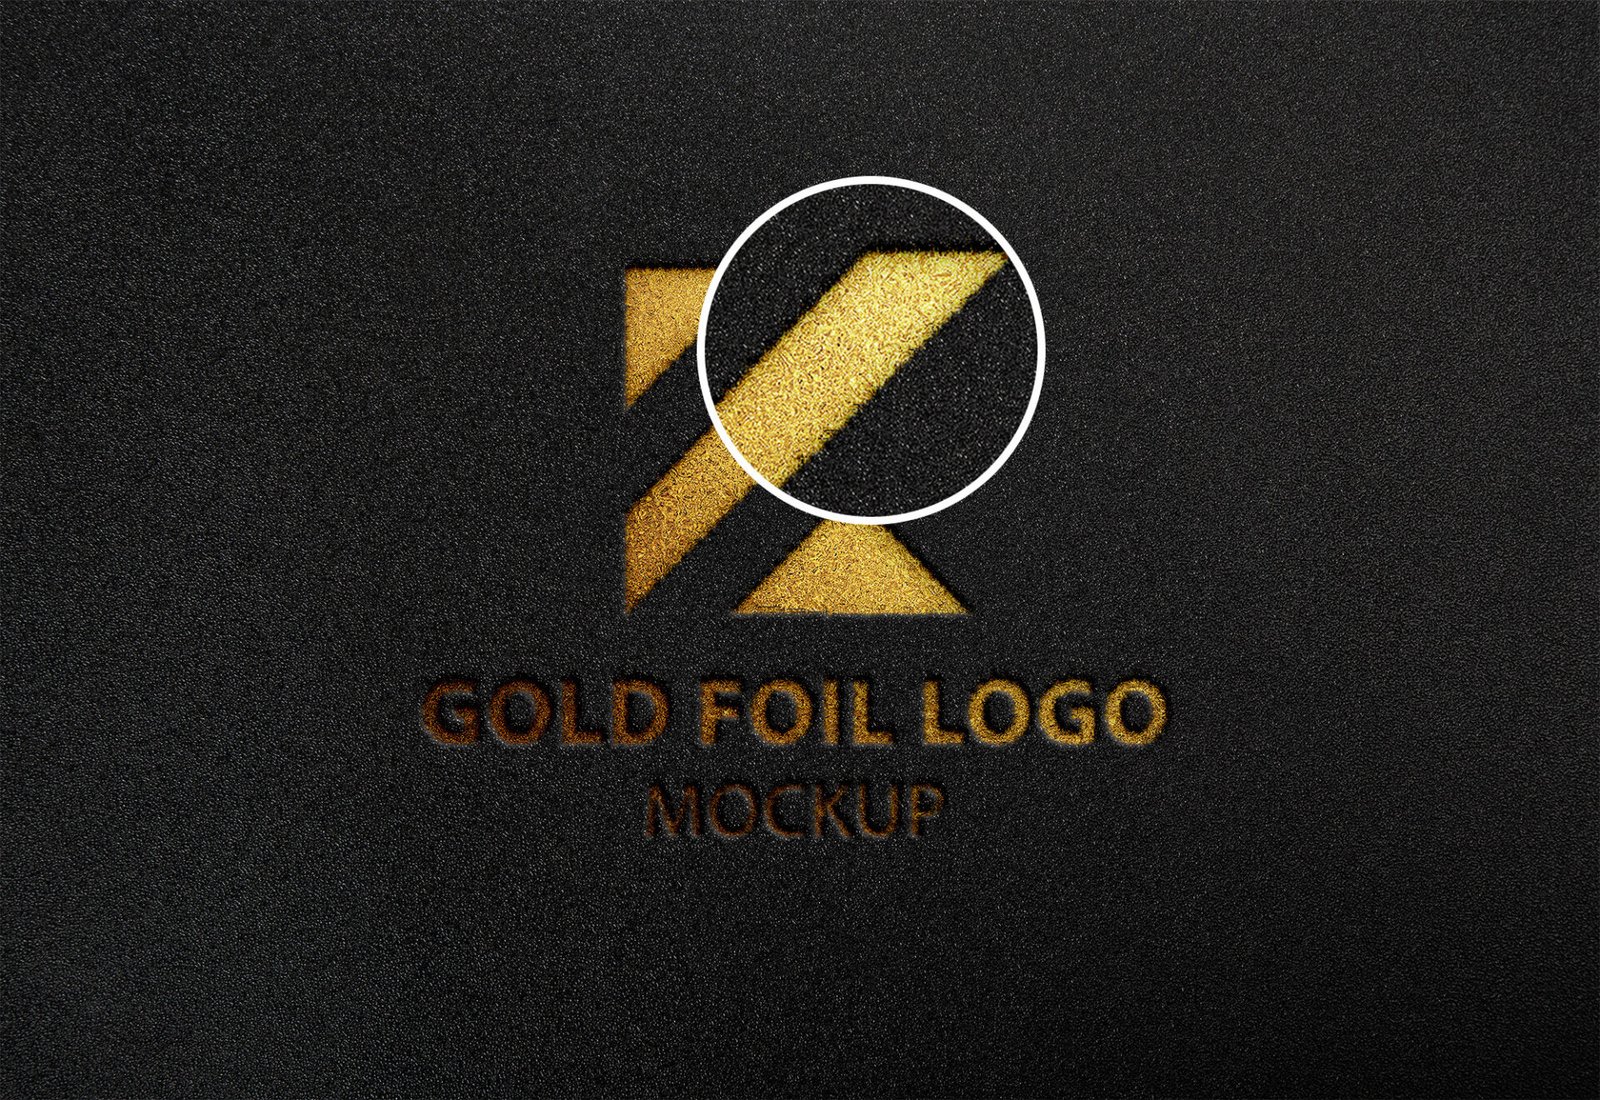 Download Free Gold Foil Logo Mockup Vol 2 PSD Template - Mockup Den